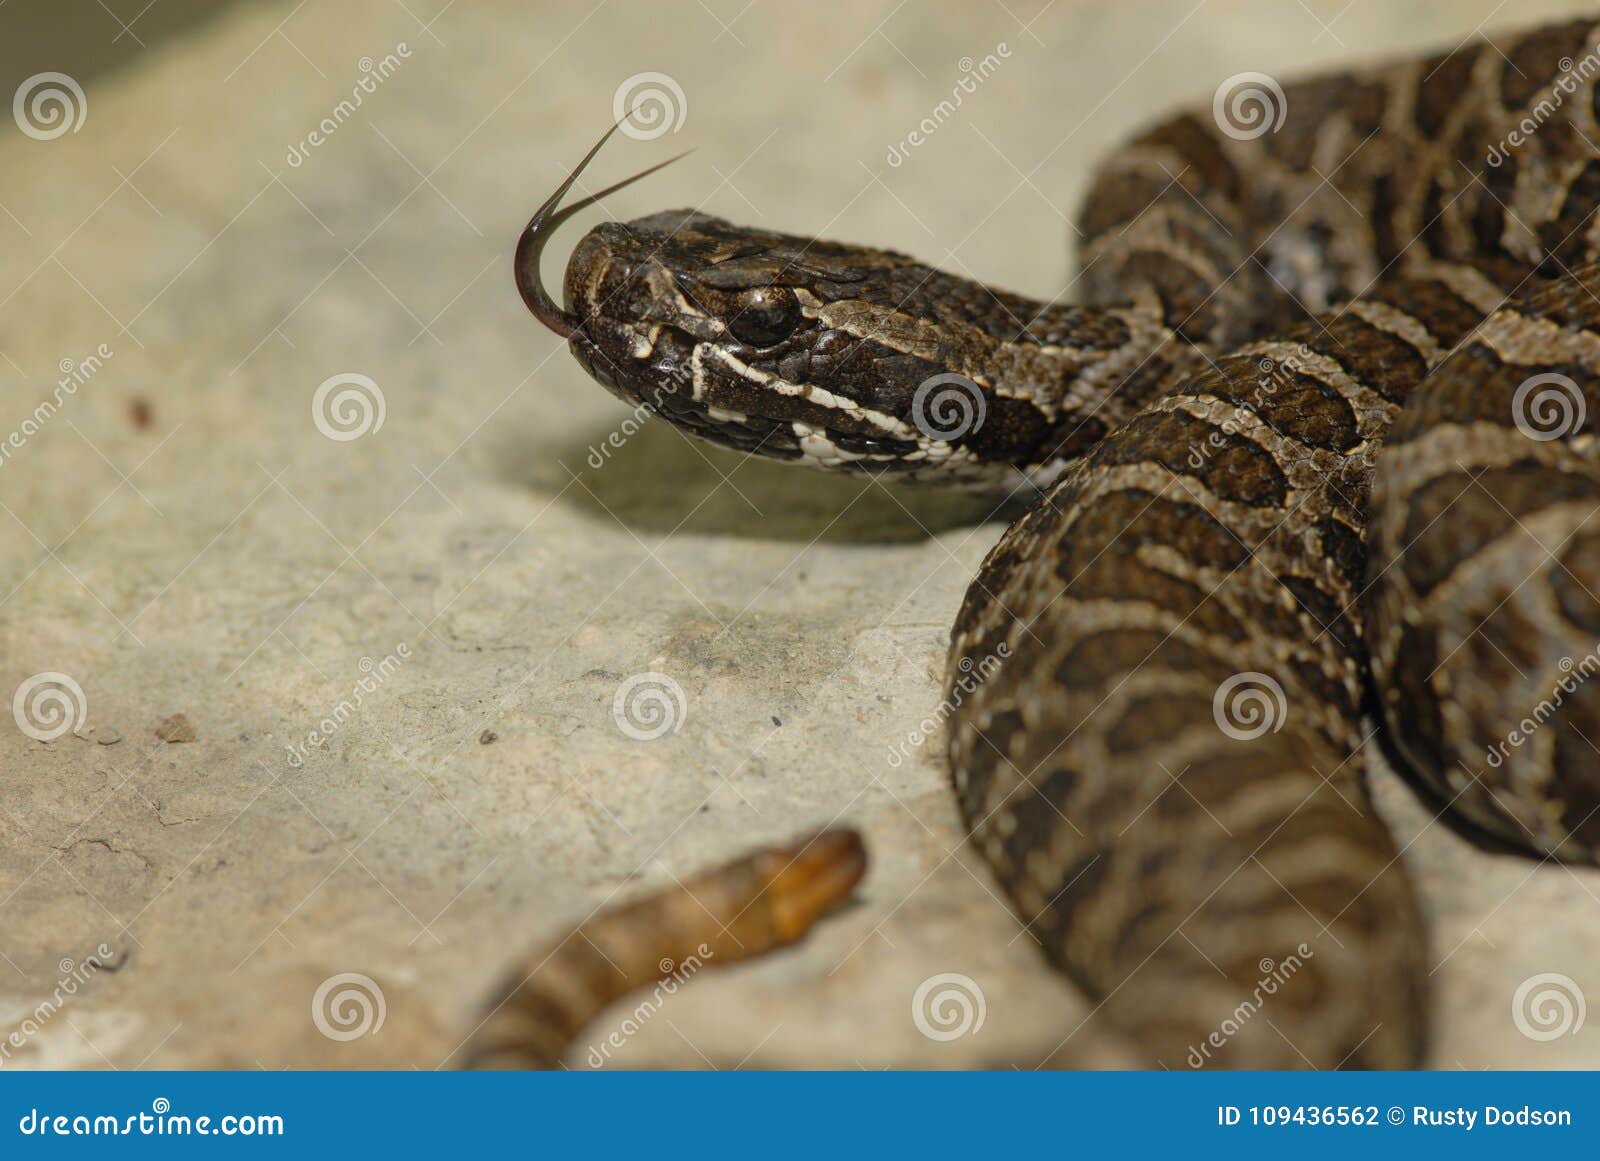 响尾蛇 库存图片. 图片 包括有 蛇蝎, 吵闹声, 沙漠, 绿色, 莫哈韦沙漠, 响尾蛇, 有毒, 危险 - 76911187